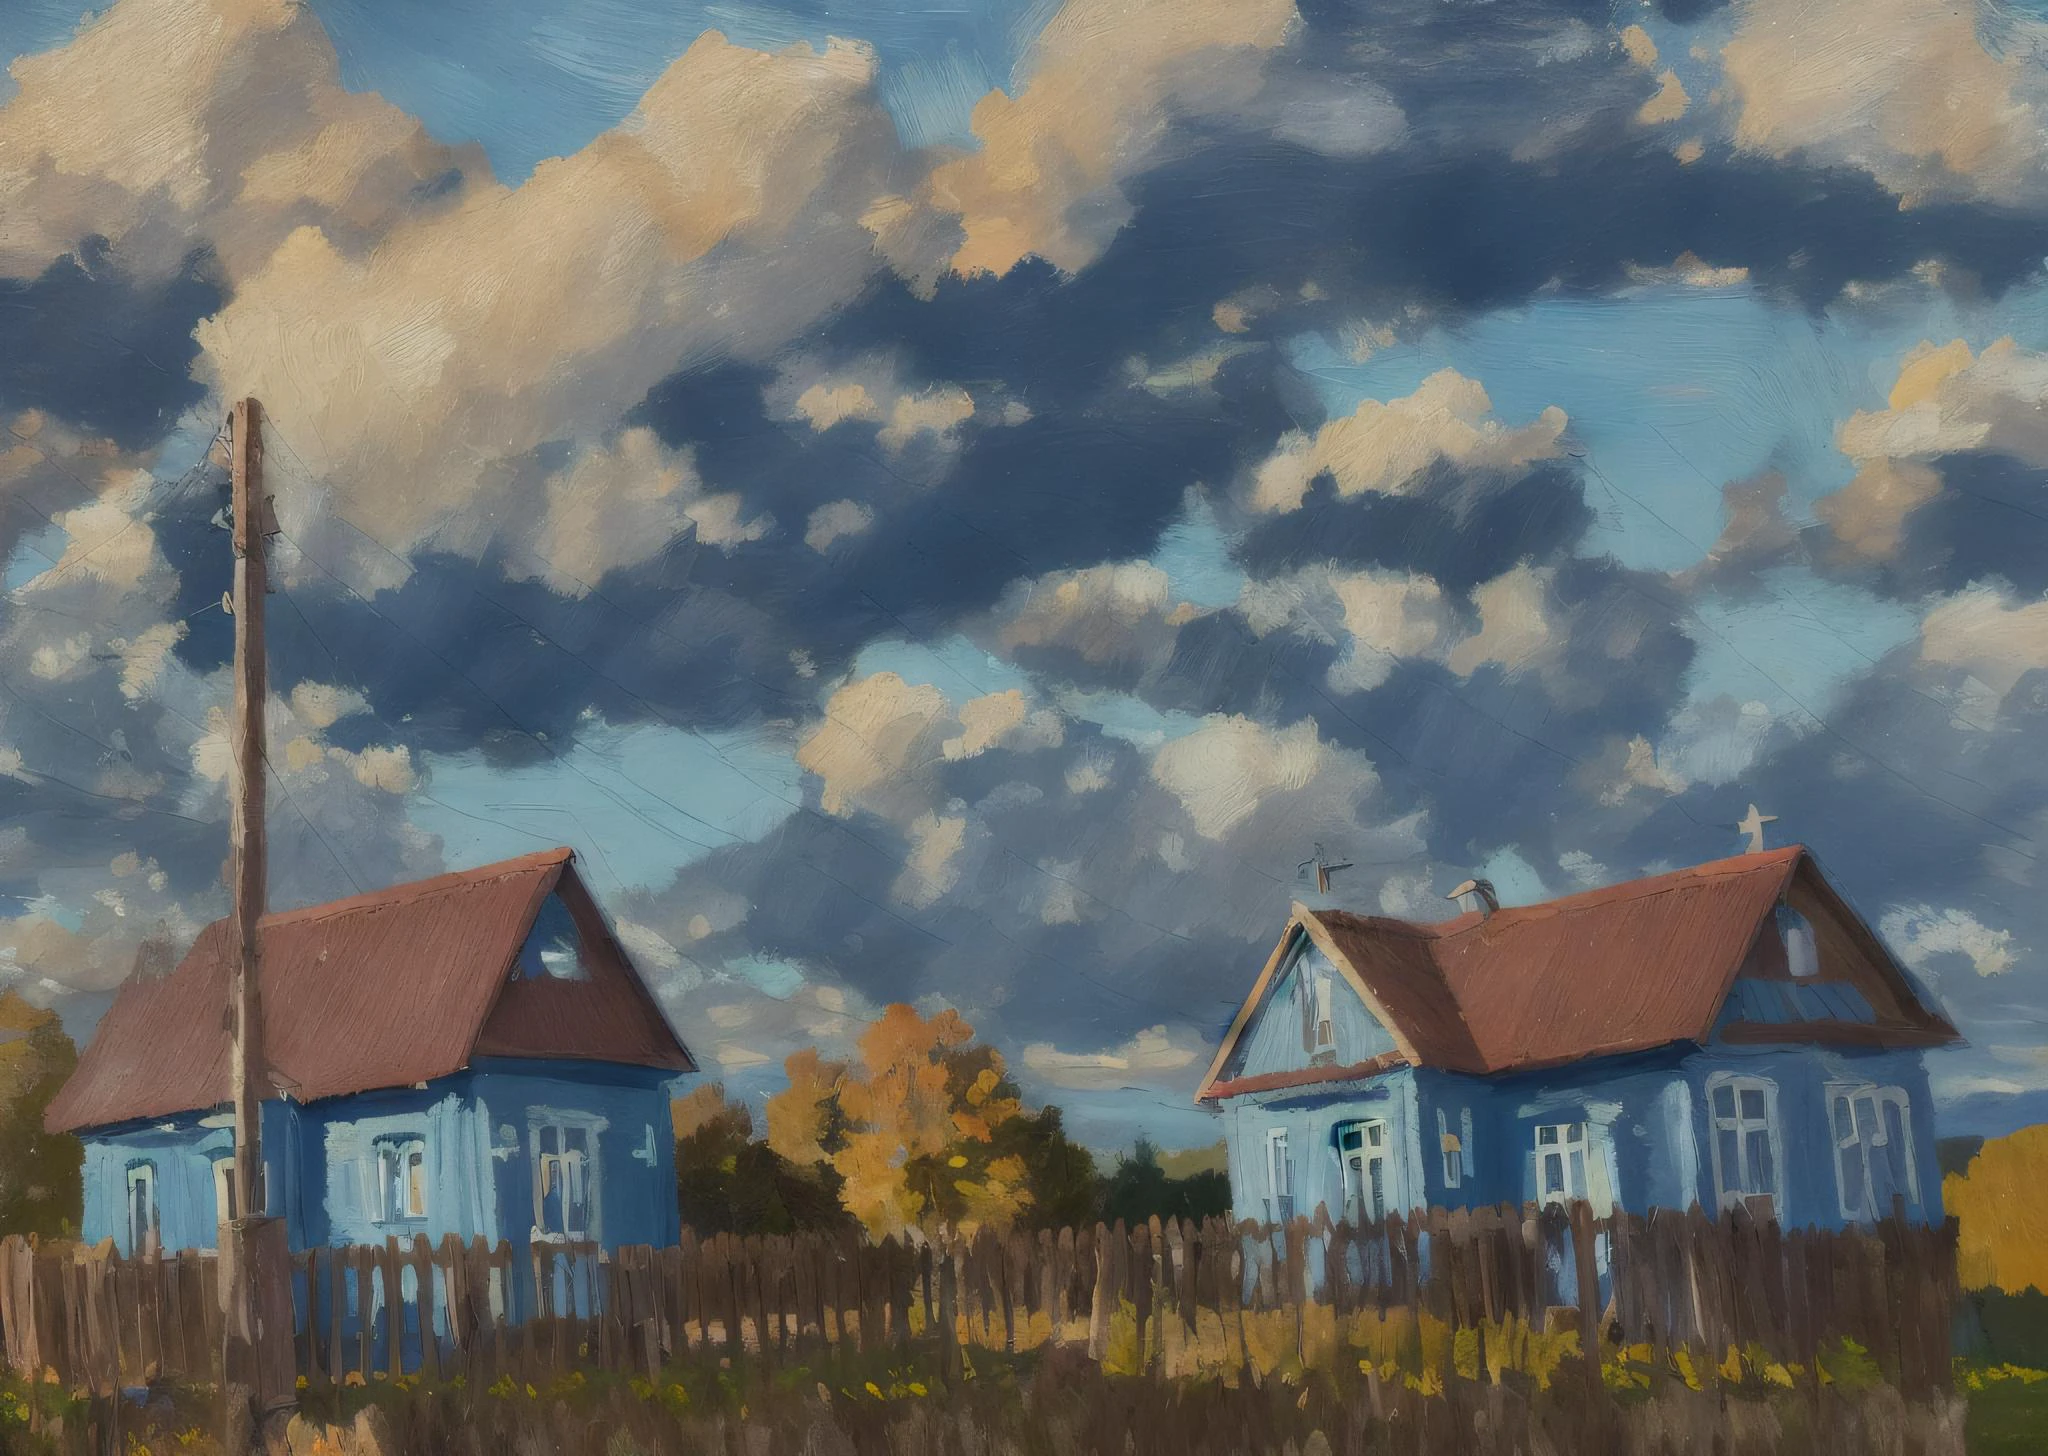 (mse의 그림:1.5) 블루 아워, 떨어지다, 하늘 배경과 구름 배경이 있는 들판에 있는 집, 집으로 이어지는 흙길과 함께, 인상파 회화,